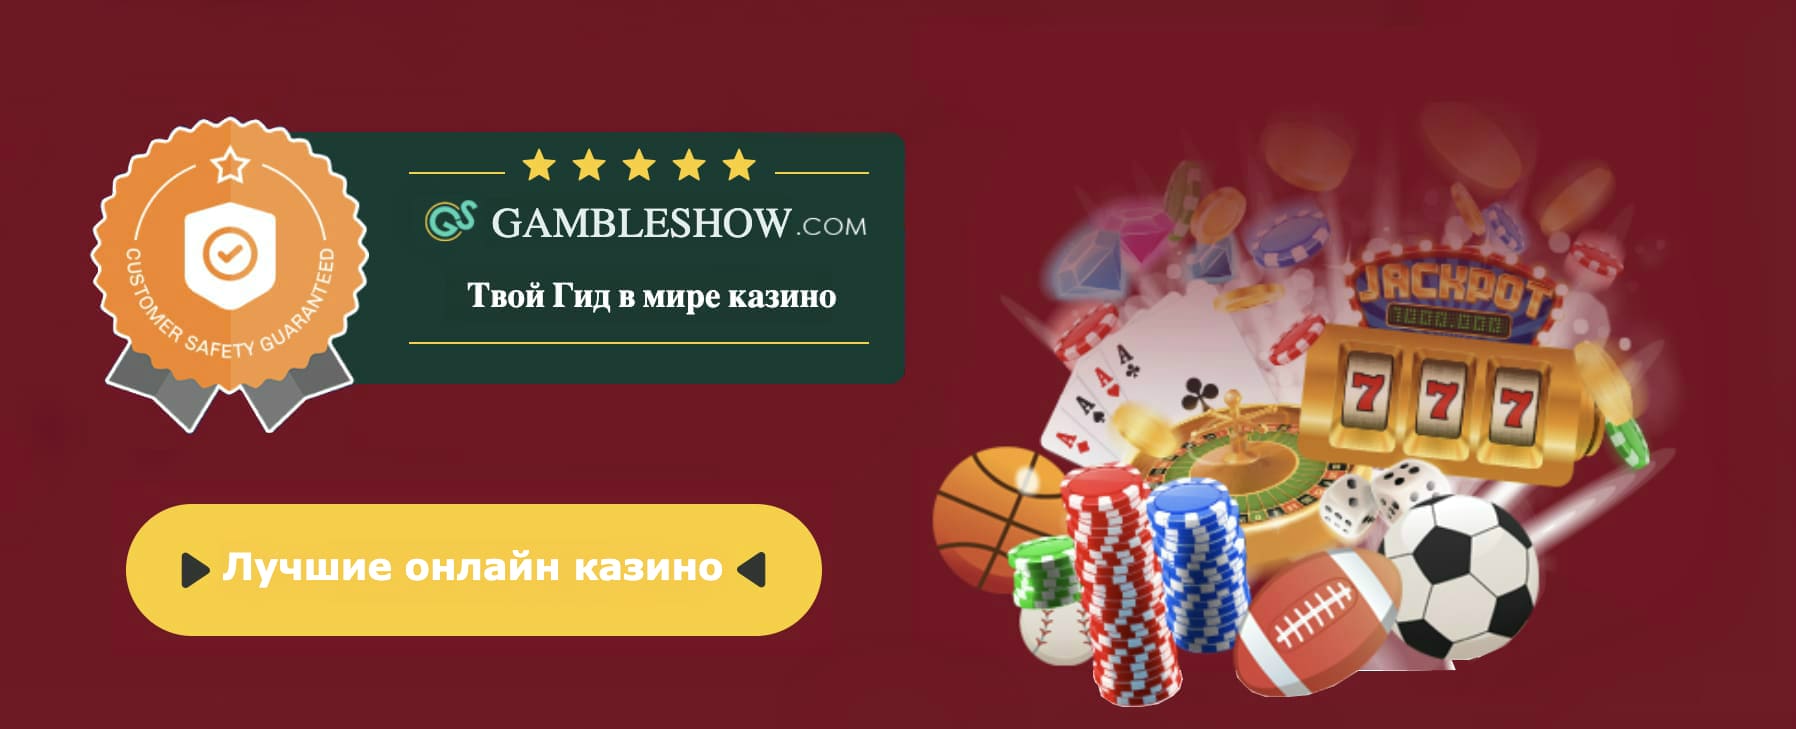 Покер старс онлайн играть бесплатно на русском титан бет букмекерская контора